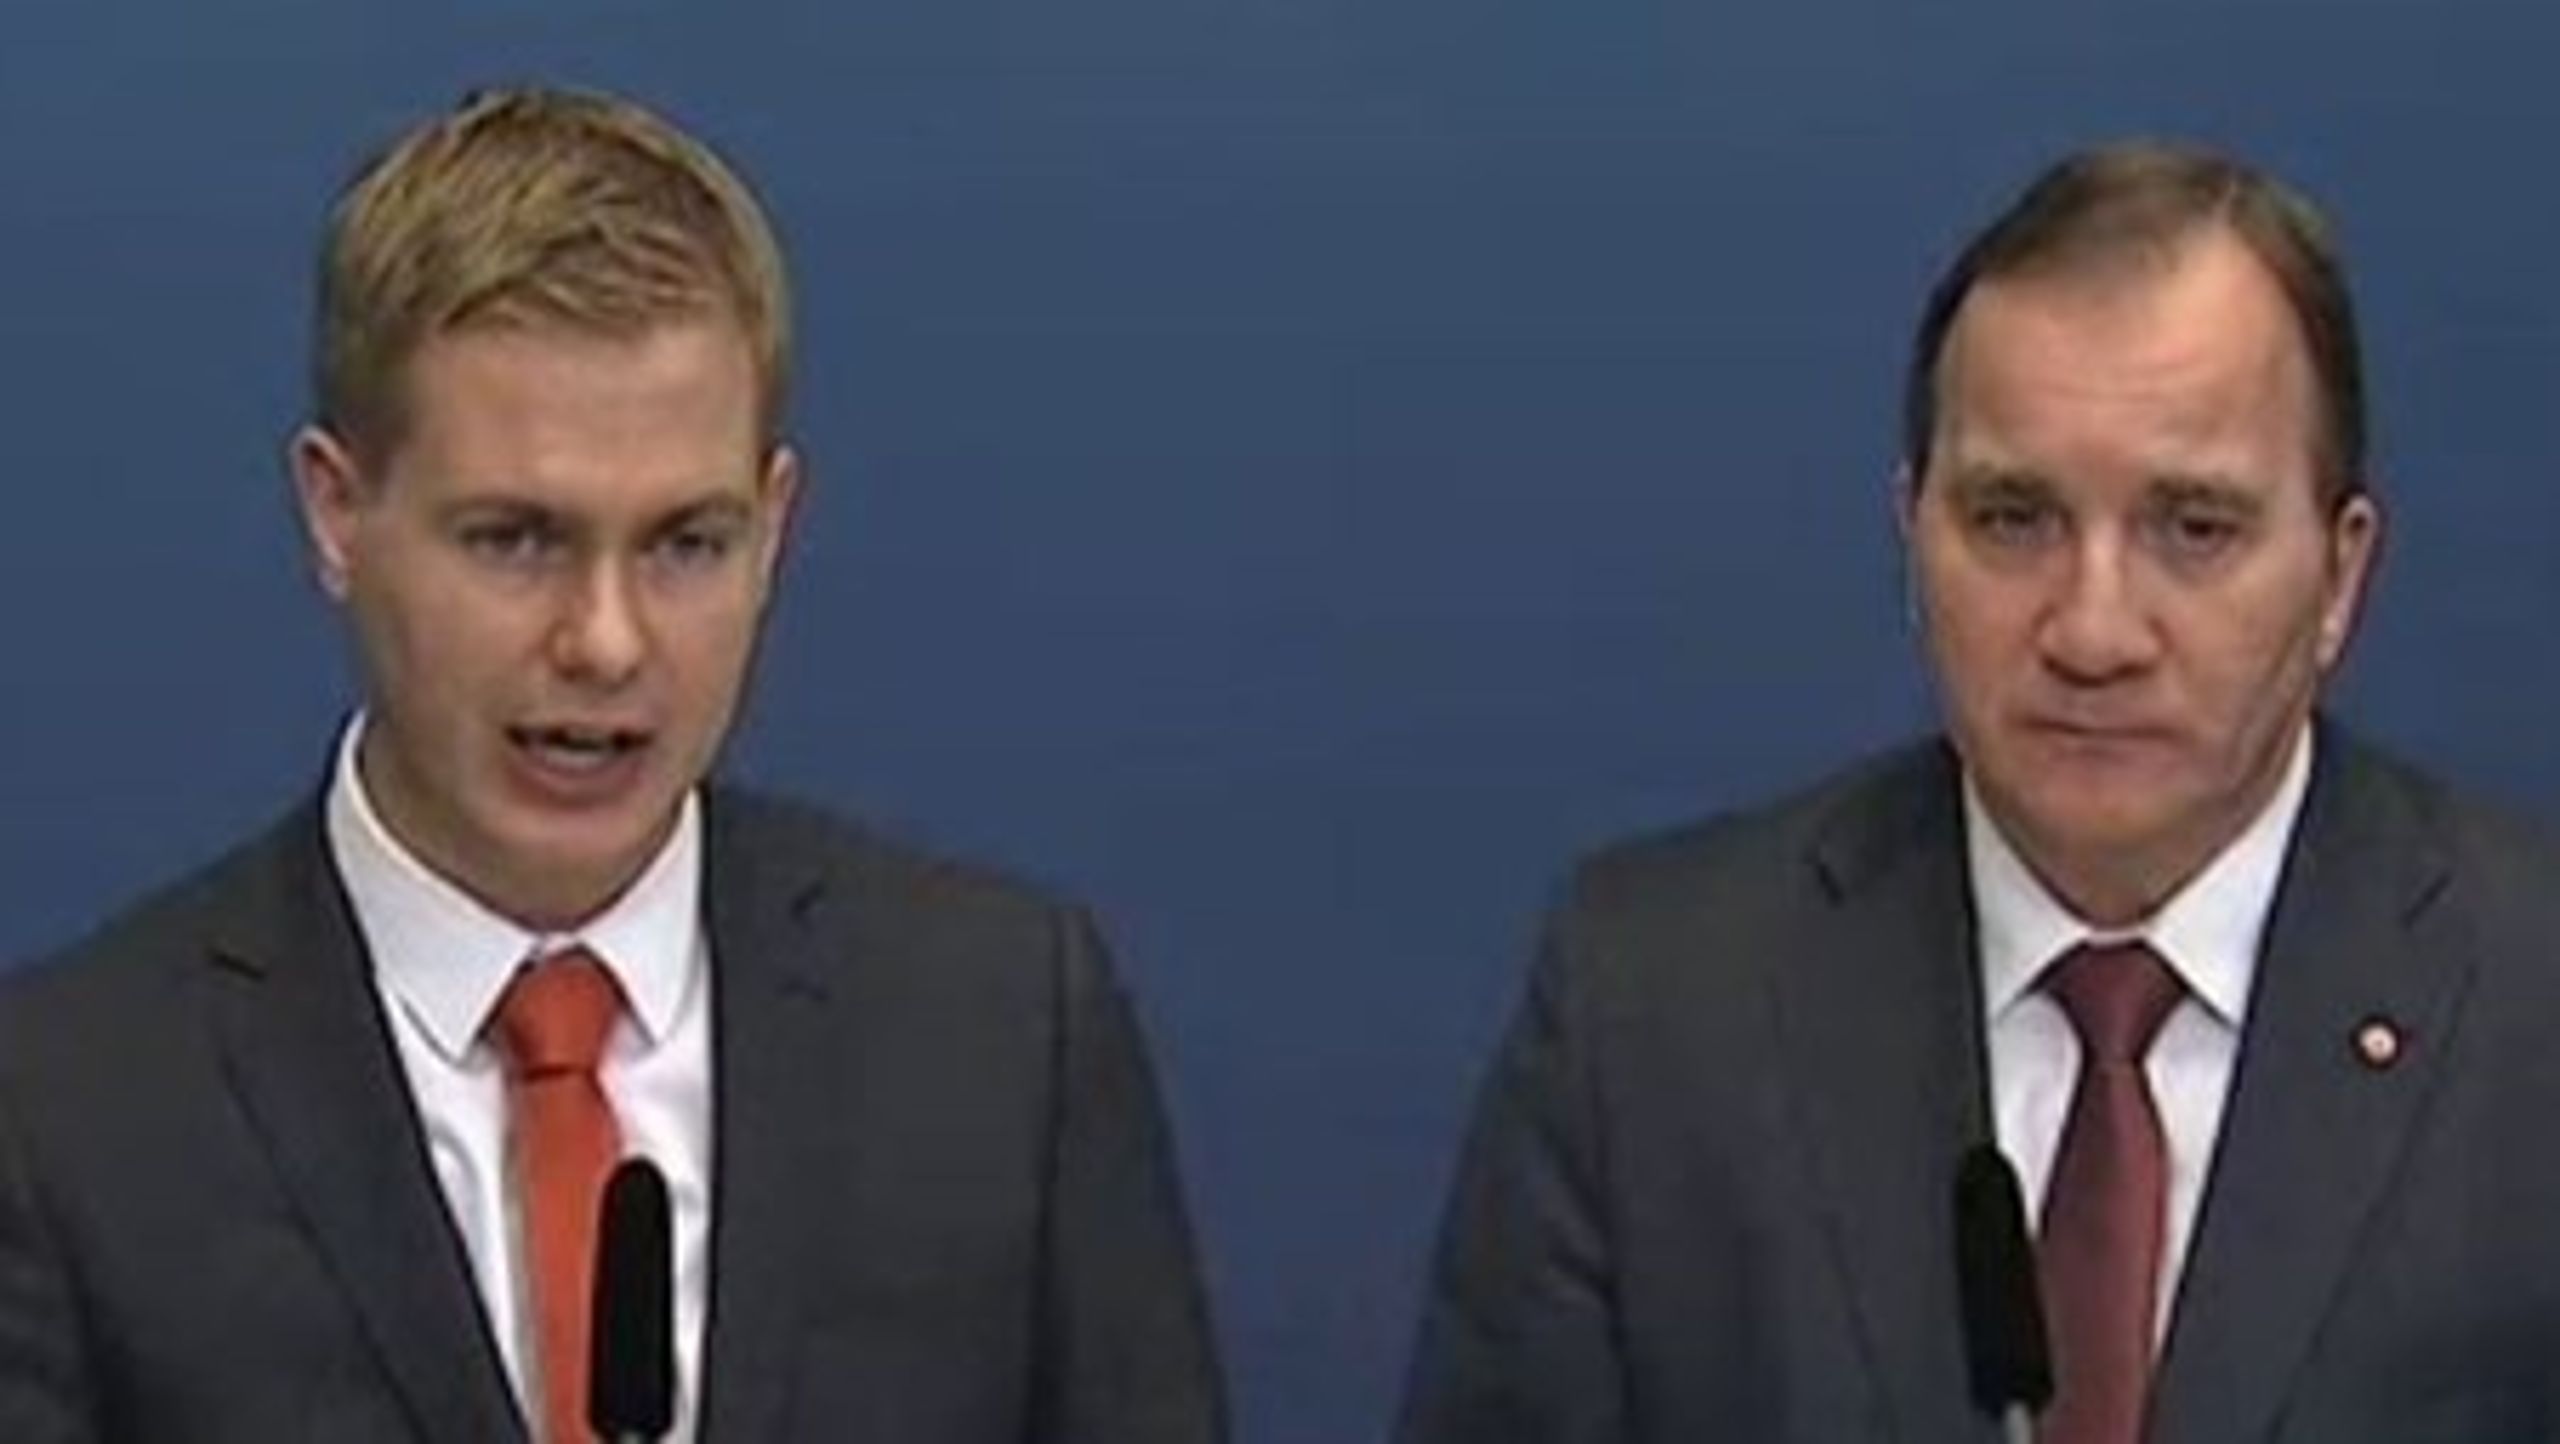 Utbildningsminister Gustav Fridolin (MP) och statsminister Stefan Löfven (S) på pressträff om skolan.